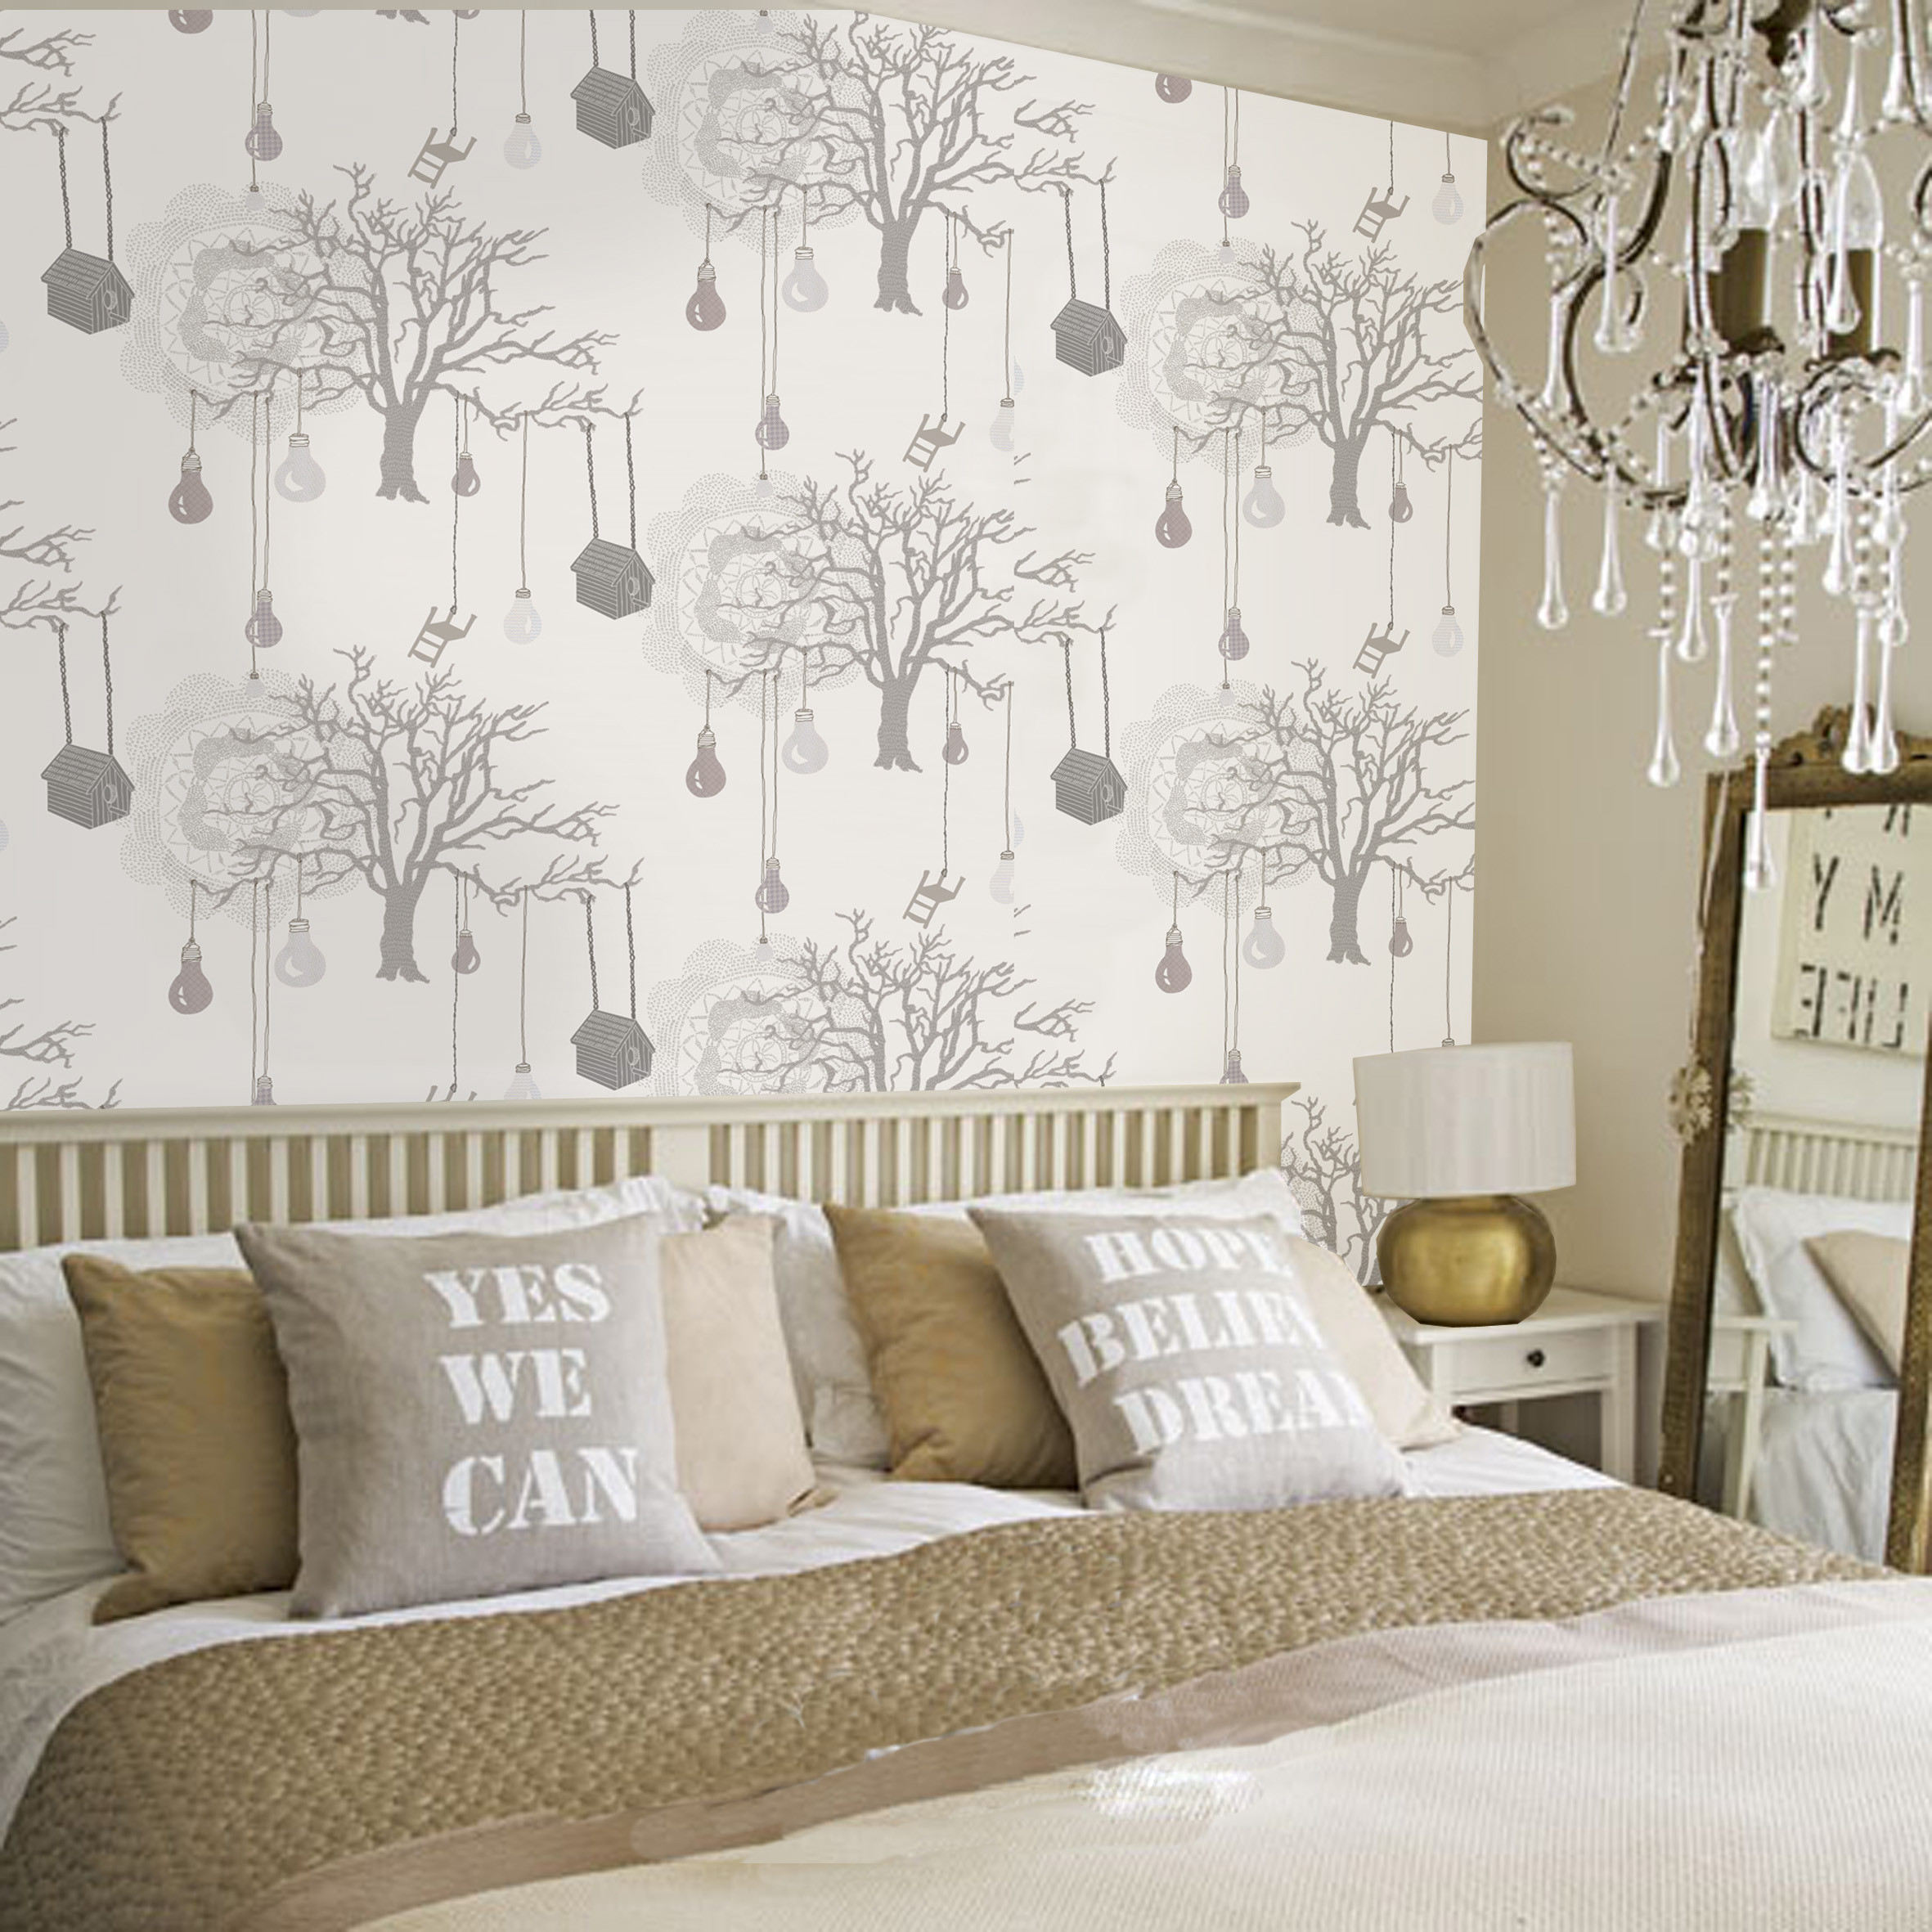 Wallpaper For Bedroom Walls Designs
 30 Best Diy Wallpaper Designs for Bedrooms UK 2015